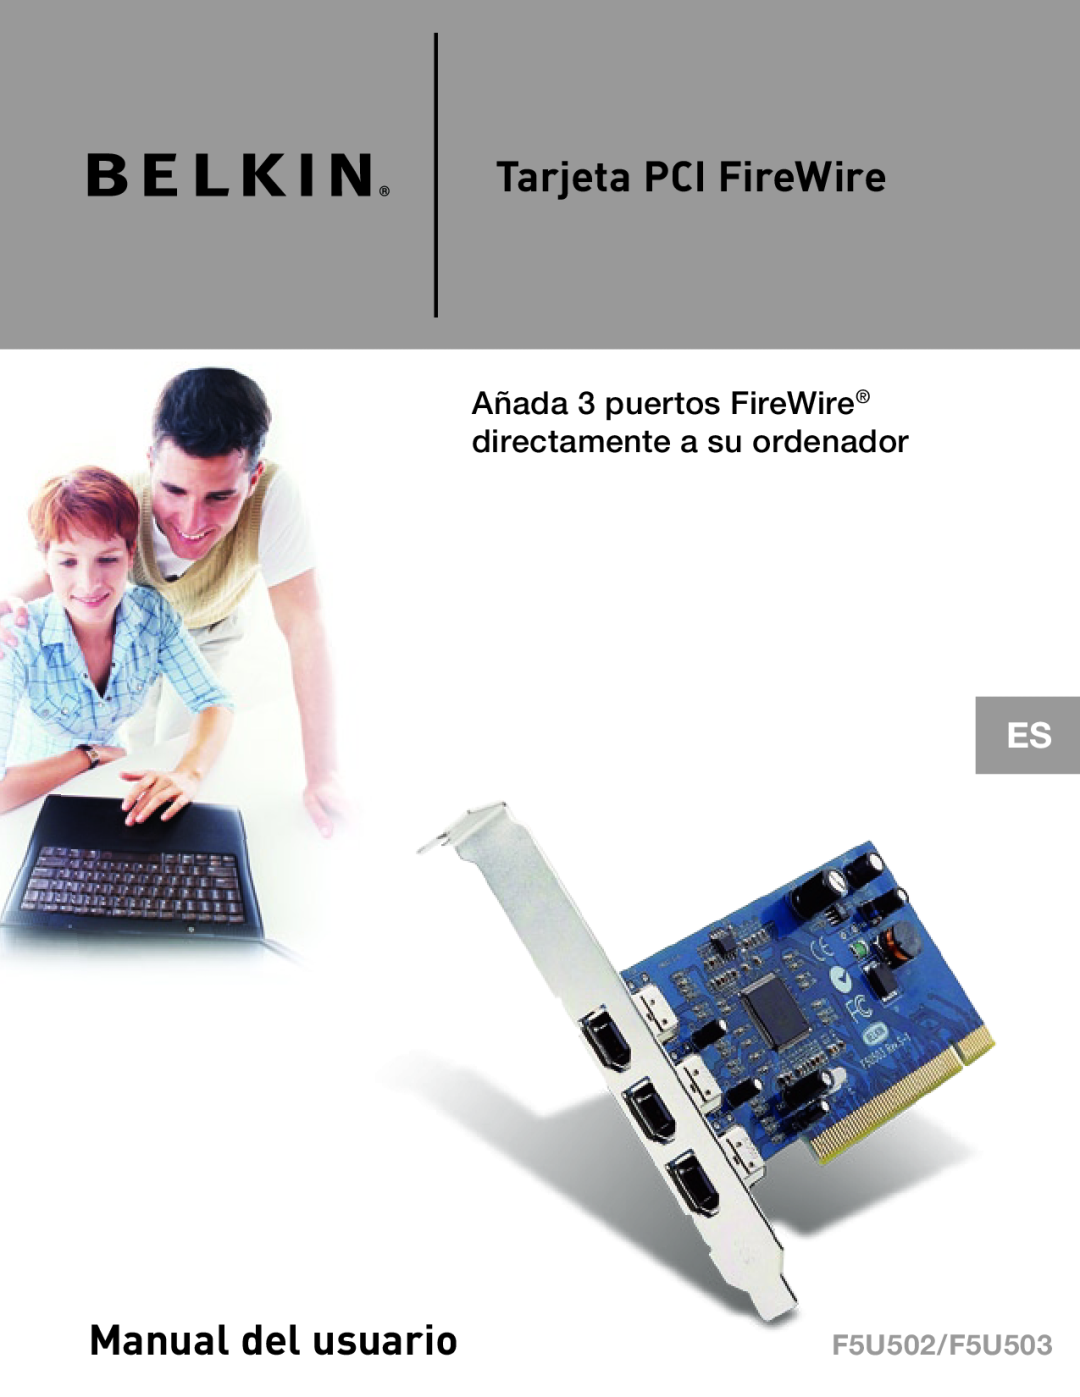 Belkin F5U502, F5U503 Tarjeta PCI FireWire, Manual del usuario, Añada 3 puertos FireWire directamente a su ordenador 